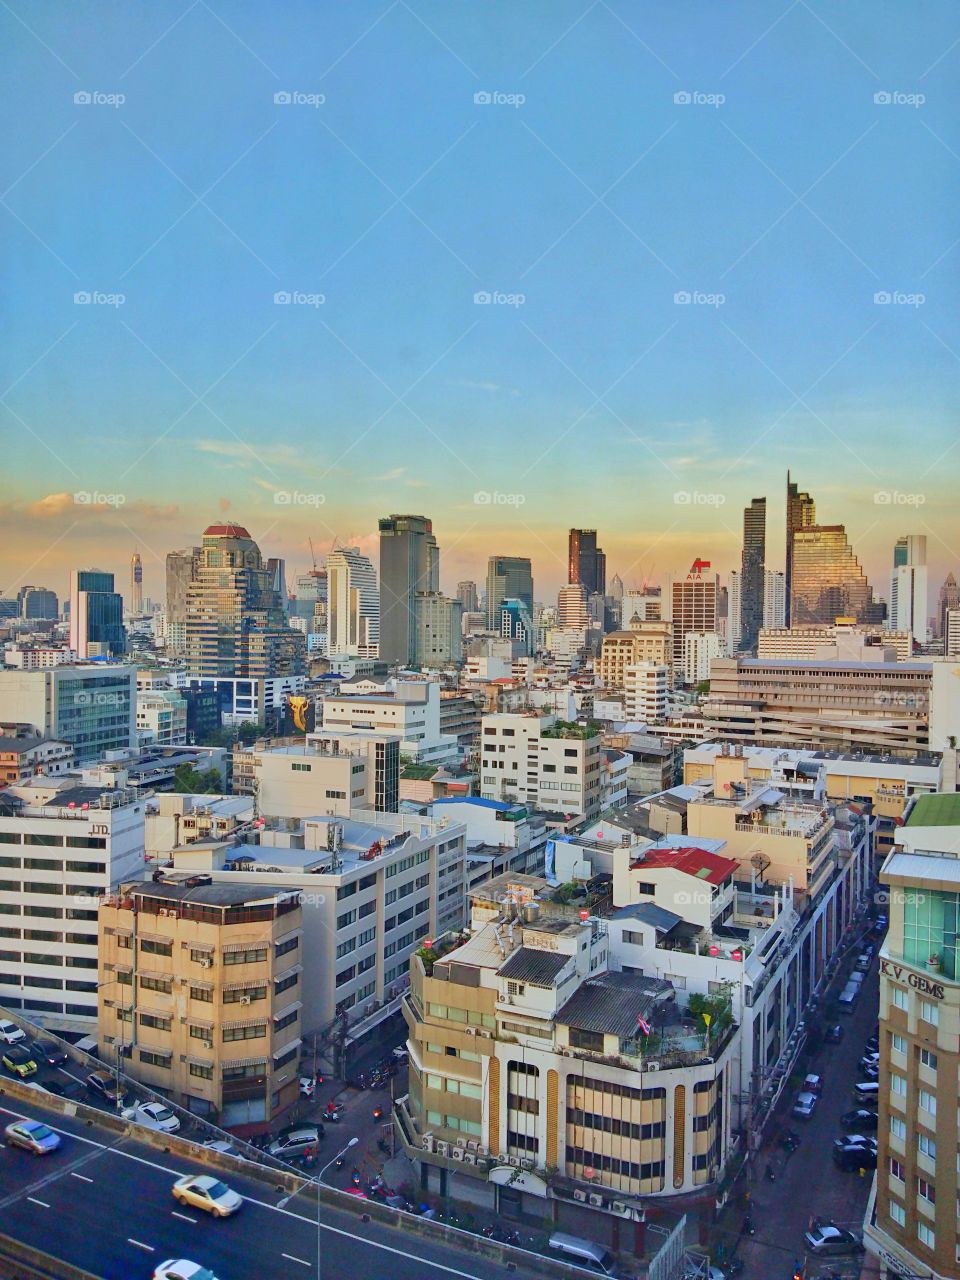 city of Bangkok